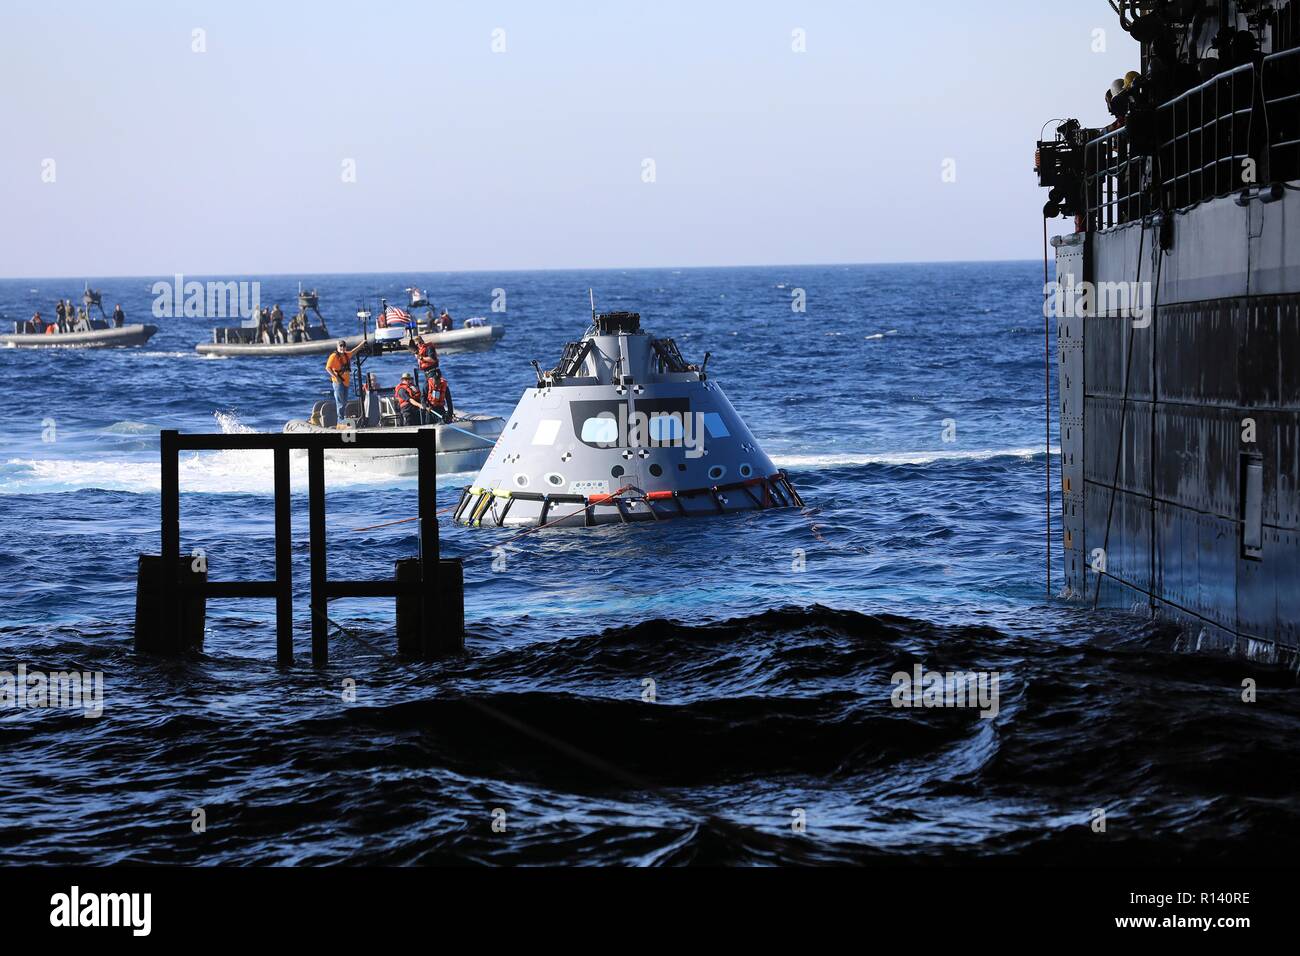 Das Team der NASA und der US-Marine Taucher ziehen ein mock up Version des Orion Next Generation Space Capsule in die gut Deck der USS John S. Murtha während einer offenen Ozean recovery test Oktober 31, 2018 im Pazifischen Ozean. Die NASA und die US-Marine hat nicht ausgeführt, offenen Ozean der Wiederherstellung eines bemannten Raumkapsel seit der Apollo Projekt in den 60er Jahren und sind den Prüfverfahren und -Hardware, der verwendet werden soll, um das Raumfahrzeug Orion wiederherzustellen, nachdem es den in den Pazifischen Ozean Spritzer folgende künftige interplanetare Raumfahrt Missionen. Stockfoto